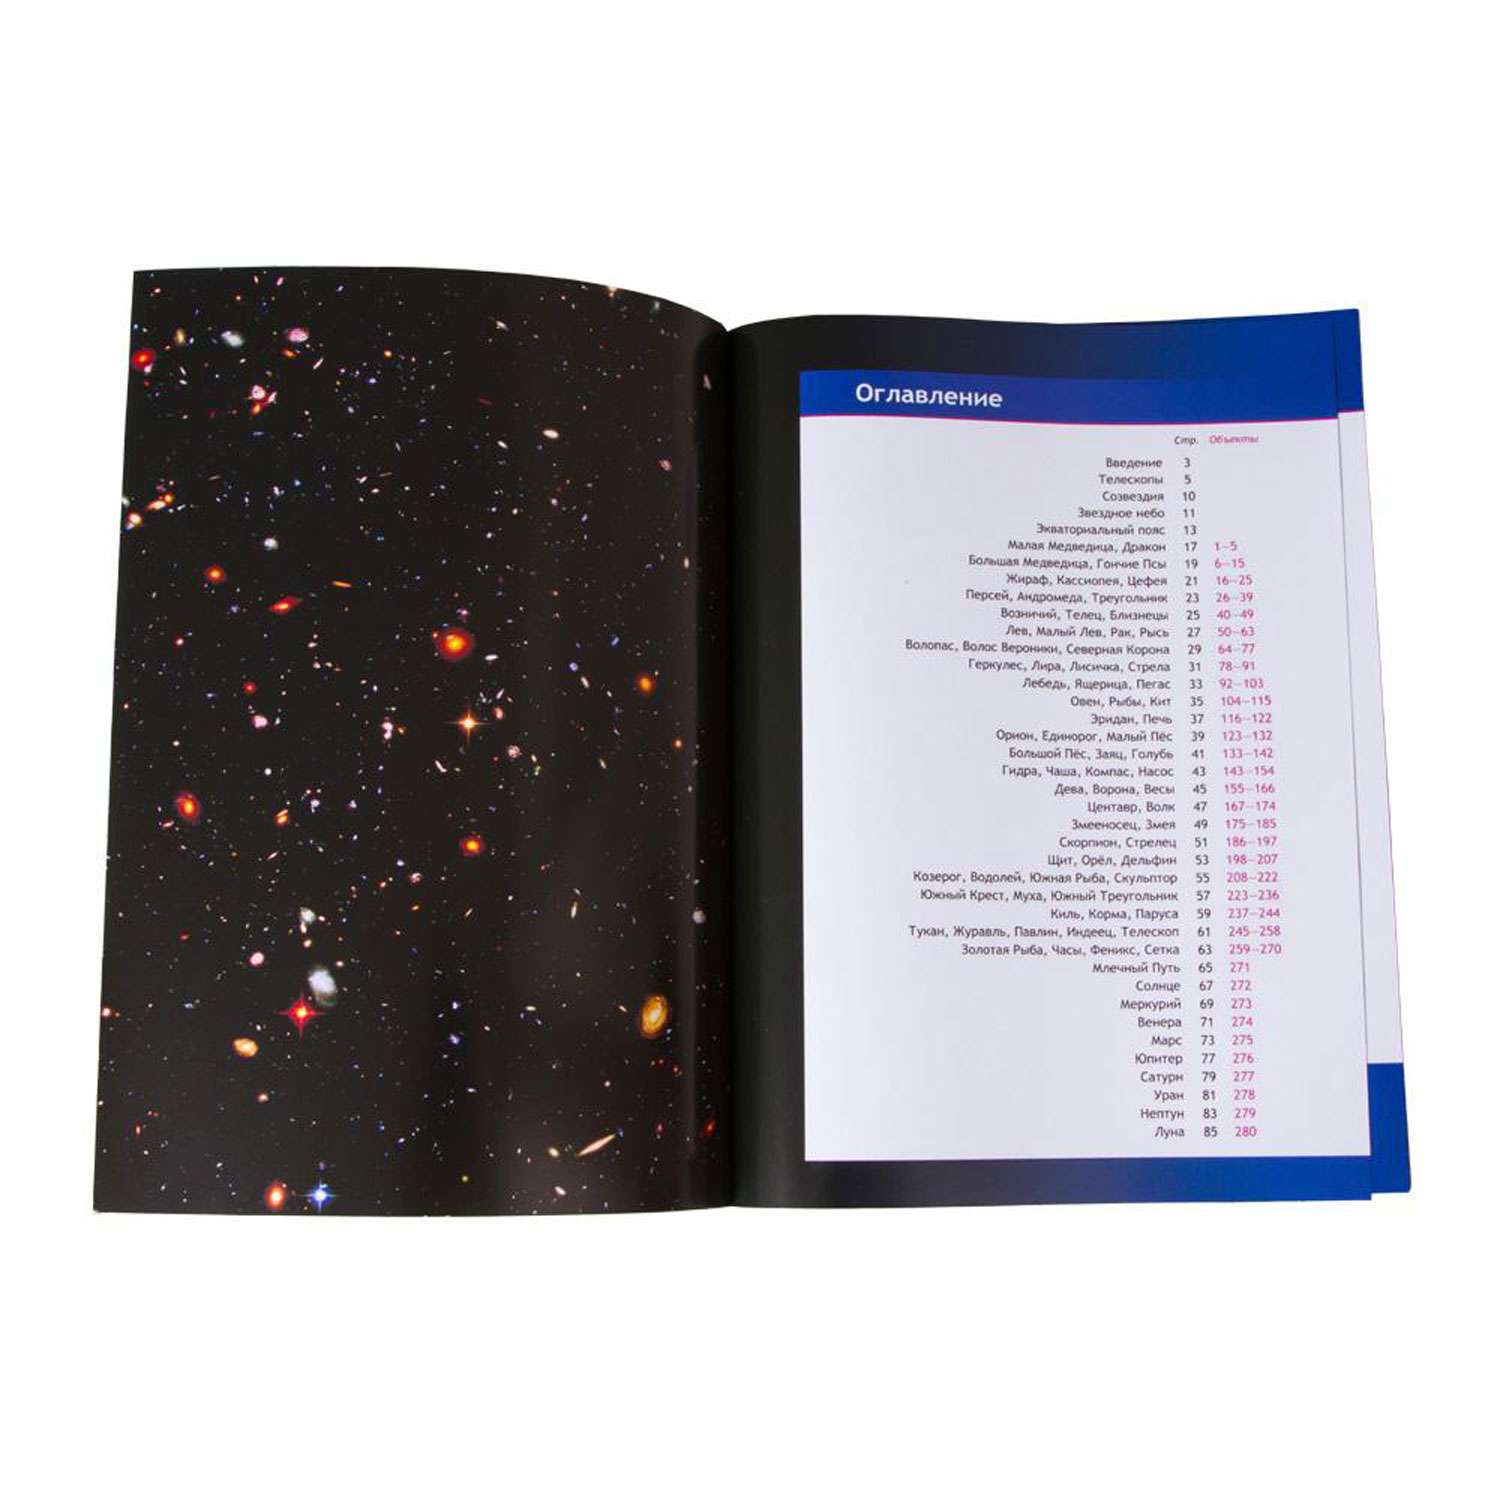 Справочник Levenhuk астранома-любителя «Увидеть все!» - фото 3